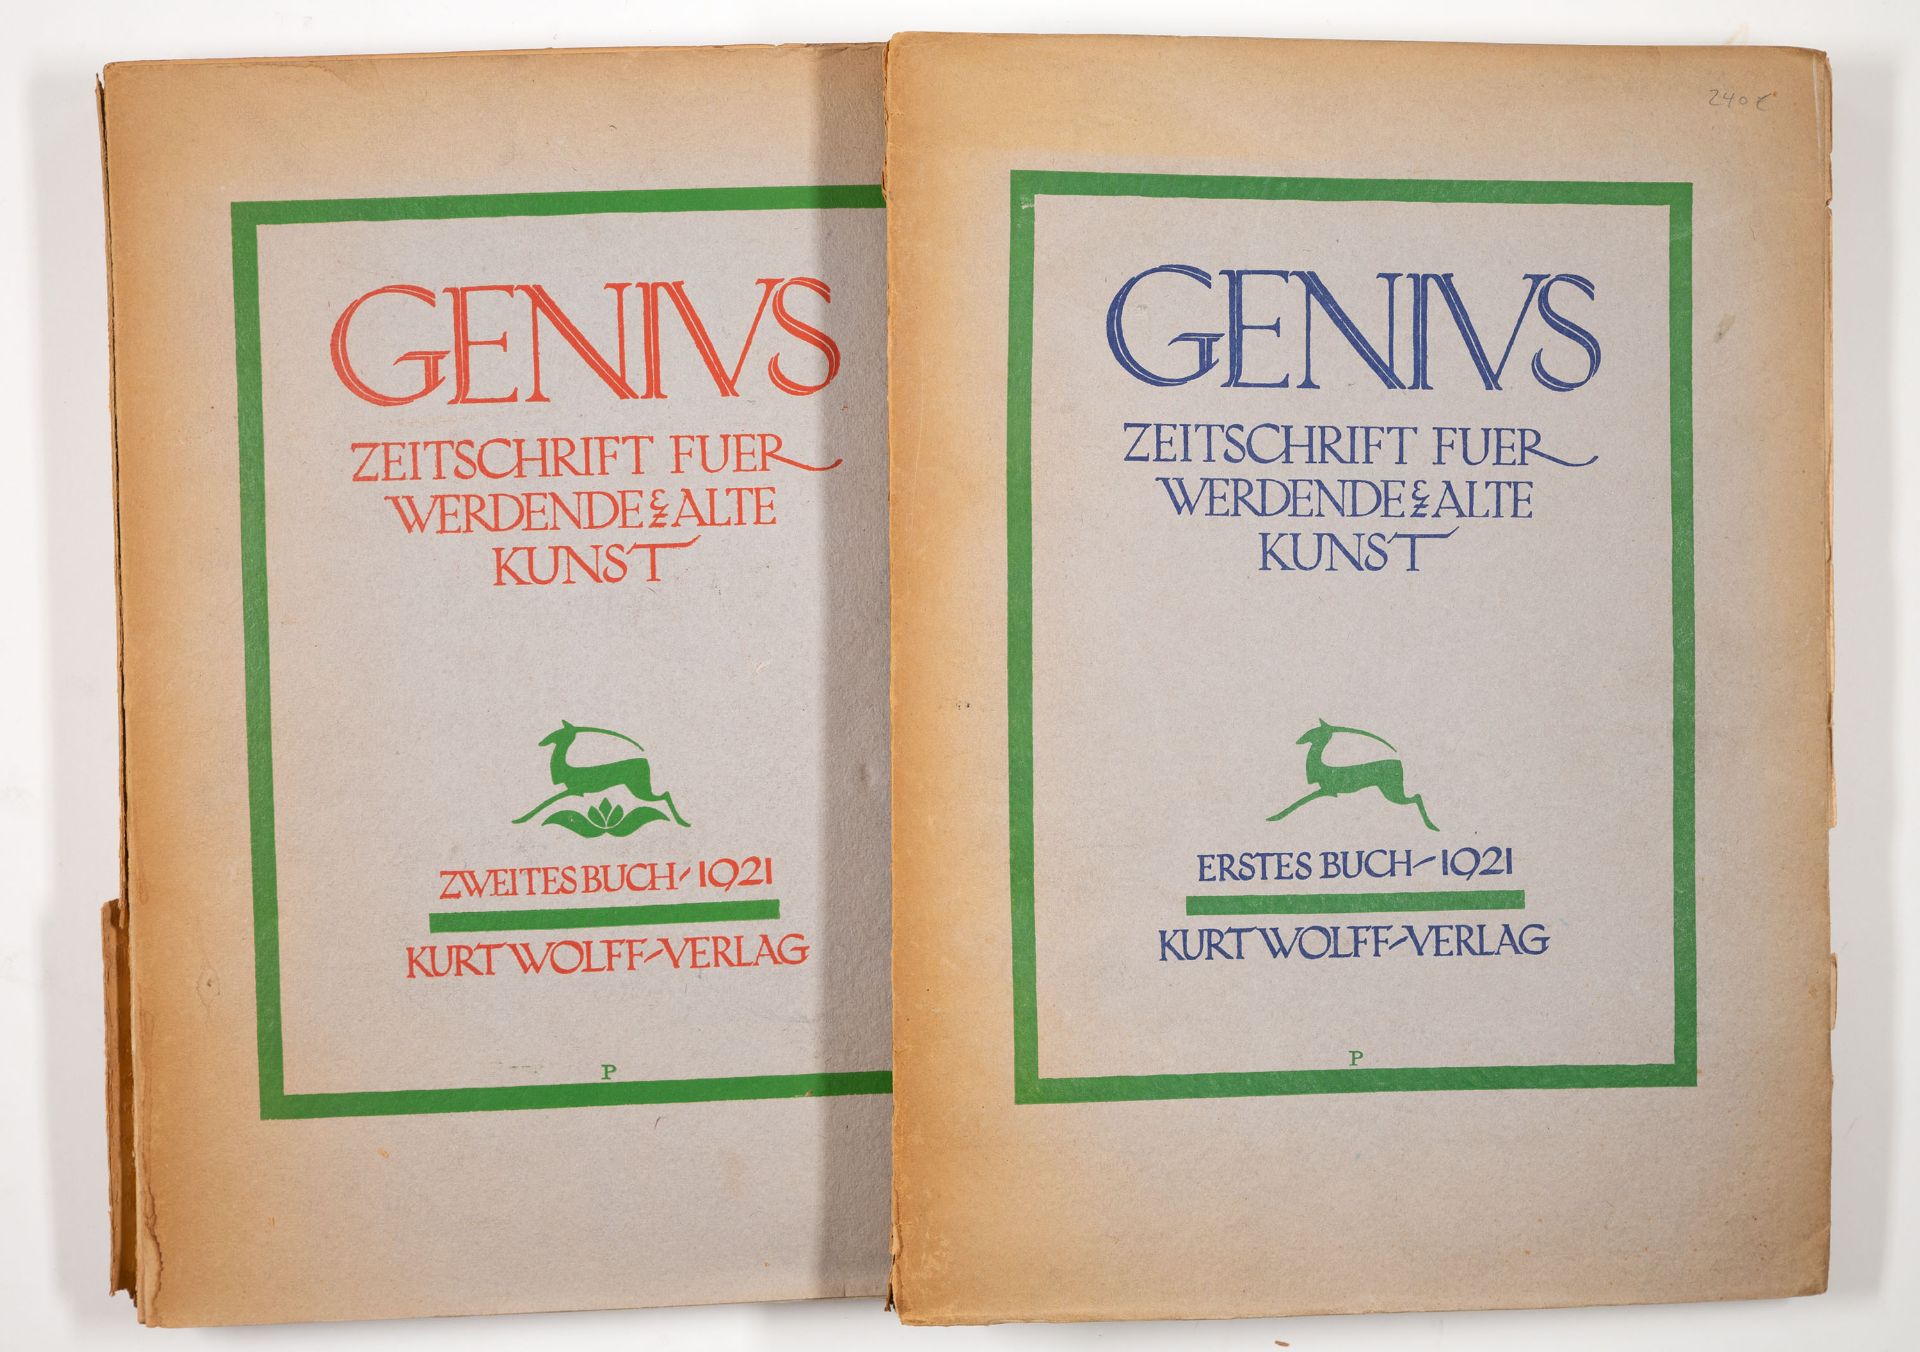 Genius. Zeitschrift für alte und werdende Kunst. 3 Jge. in 5 Bdn. 1919-21. - Image 6 of 6